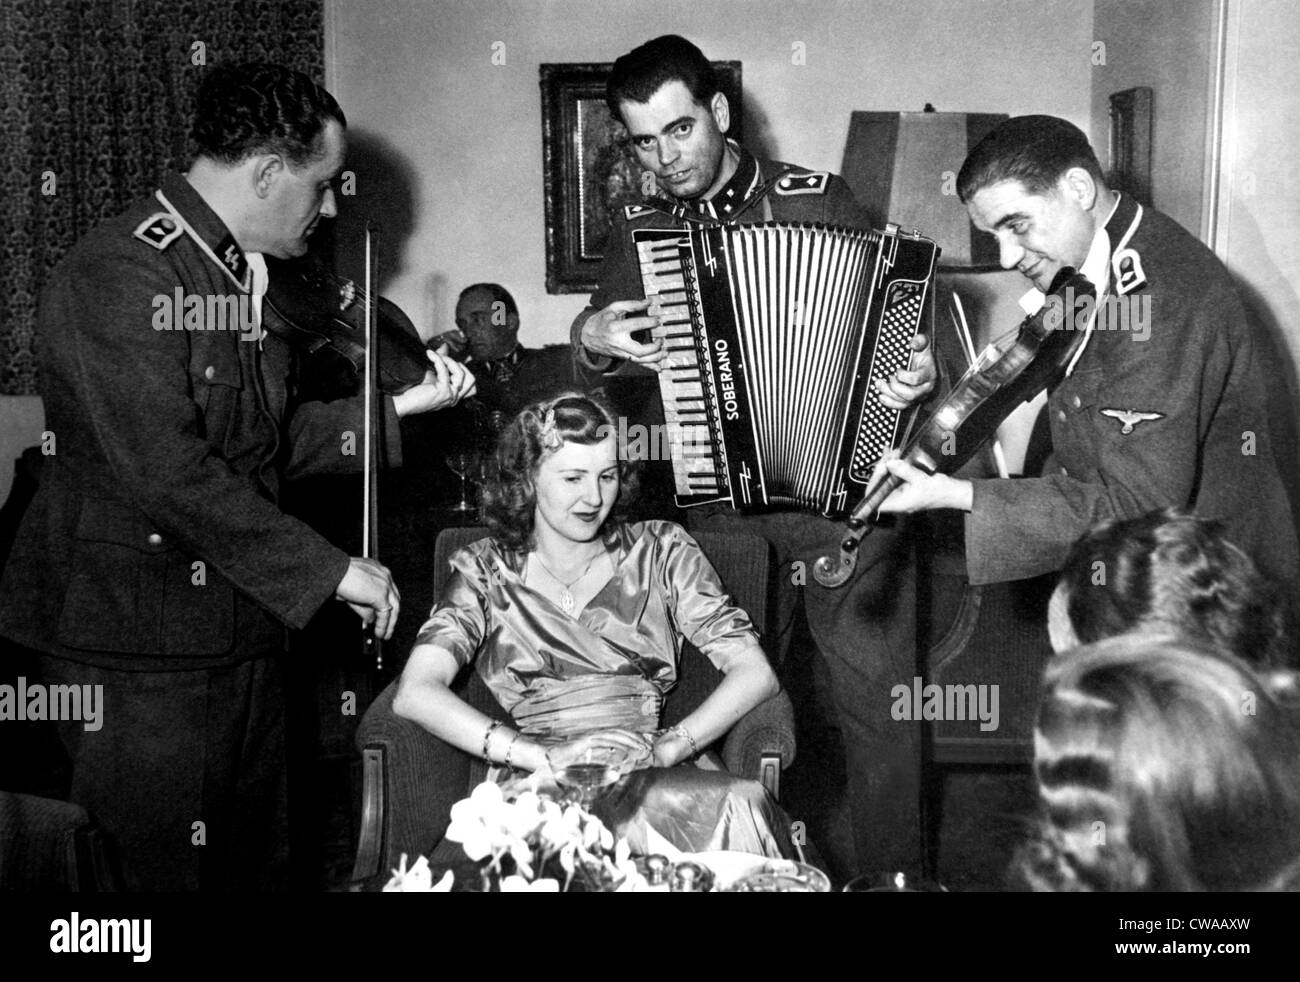 SS músicos interpretan a Eva Braun en la boda de su hermana. ca. 1945. Cortesía: CSU Archives/Everett Collection Foto de stock